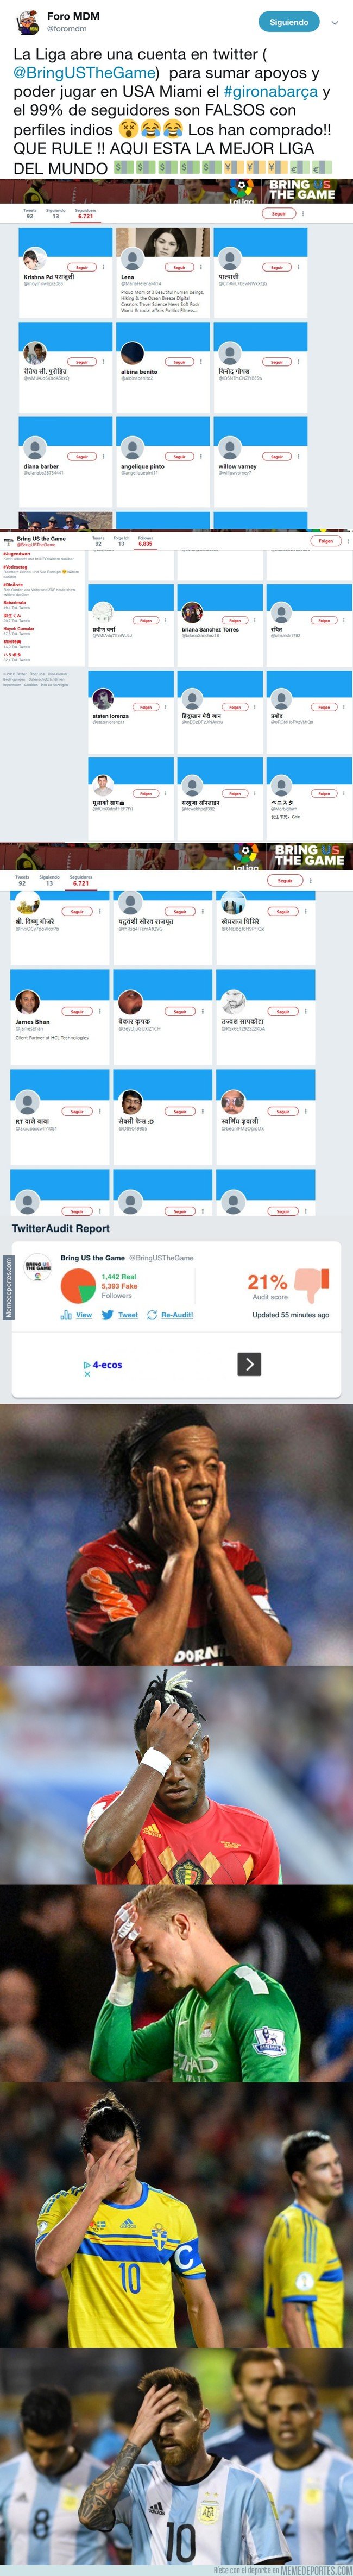 1056438 - La Liga abre una cuenta en twitter para sumar apoyos y poder jugar en USA Miami el #gironabarça y el 99% de seguidores son FALSOS